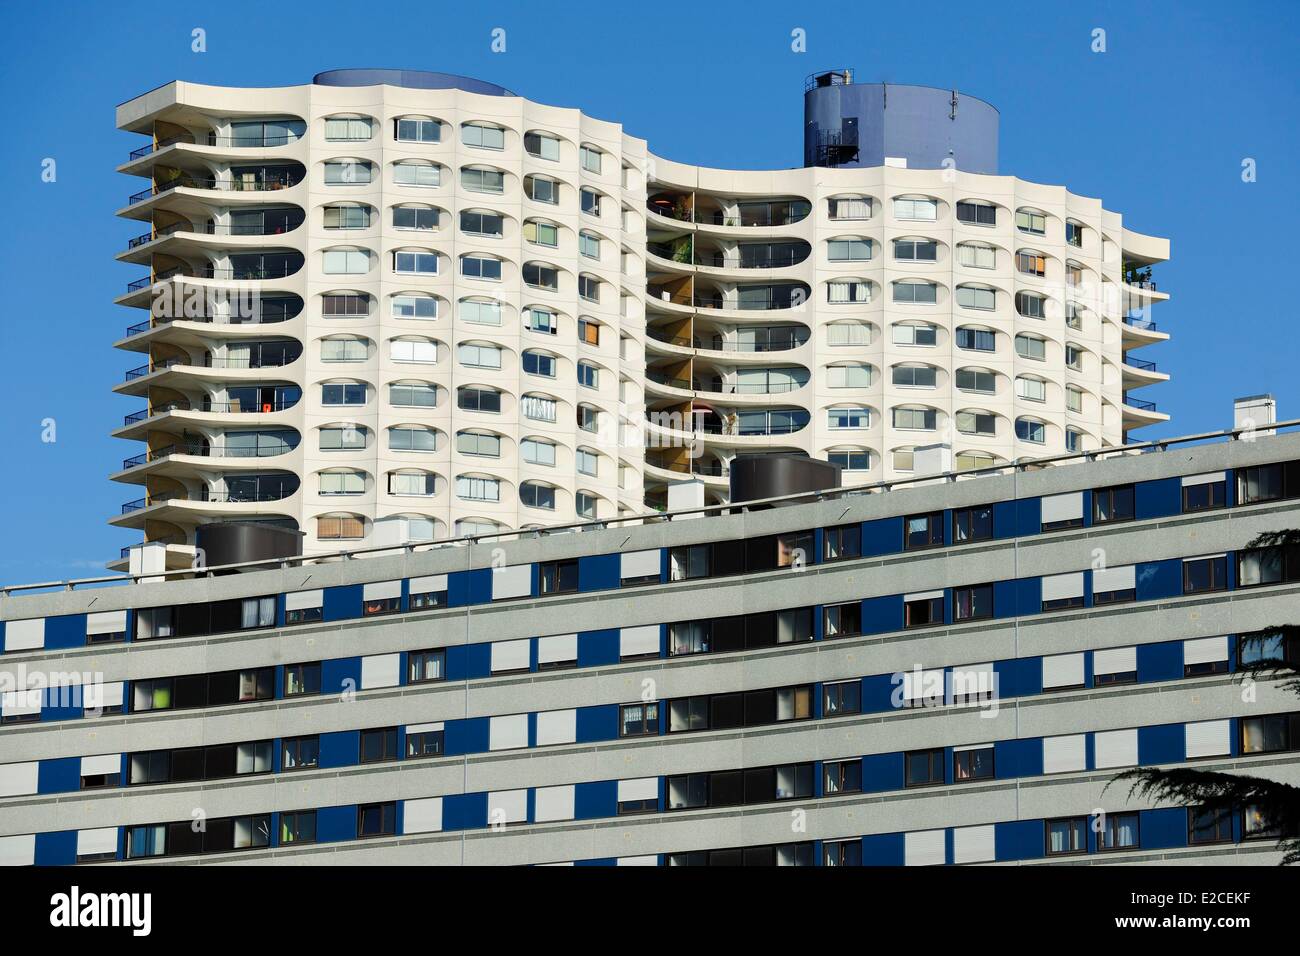 Frankreich, Ille et Vilaine, Rennes, das erste Hochhaus in Rennes gebaut 1970 vom Architekten George Maillols, Doppelturm Les Horizons ist 99 Meter lang und verfügt über 480 Wohnungen Stockfoto